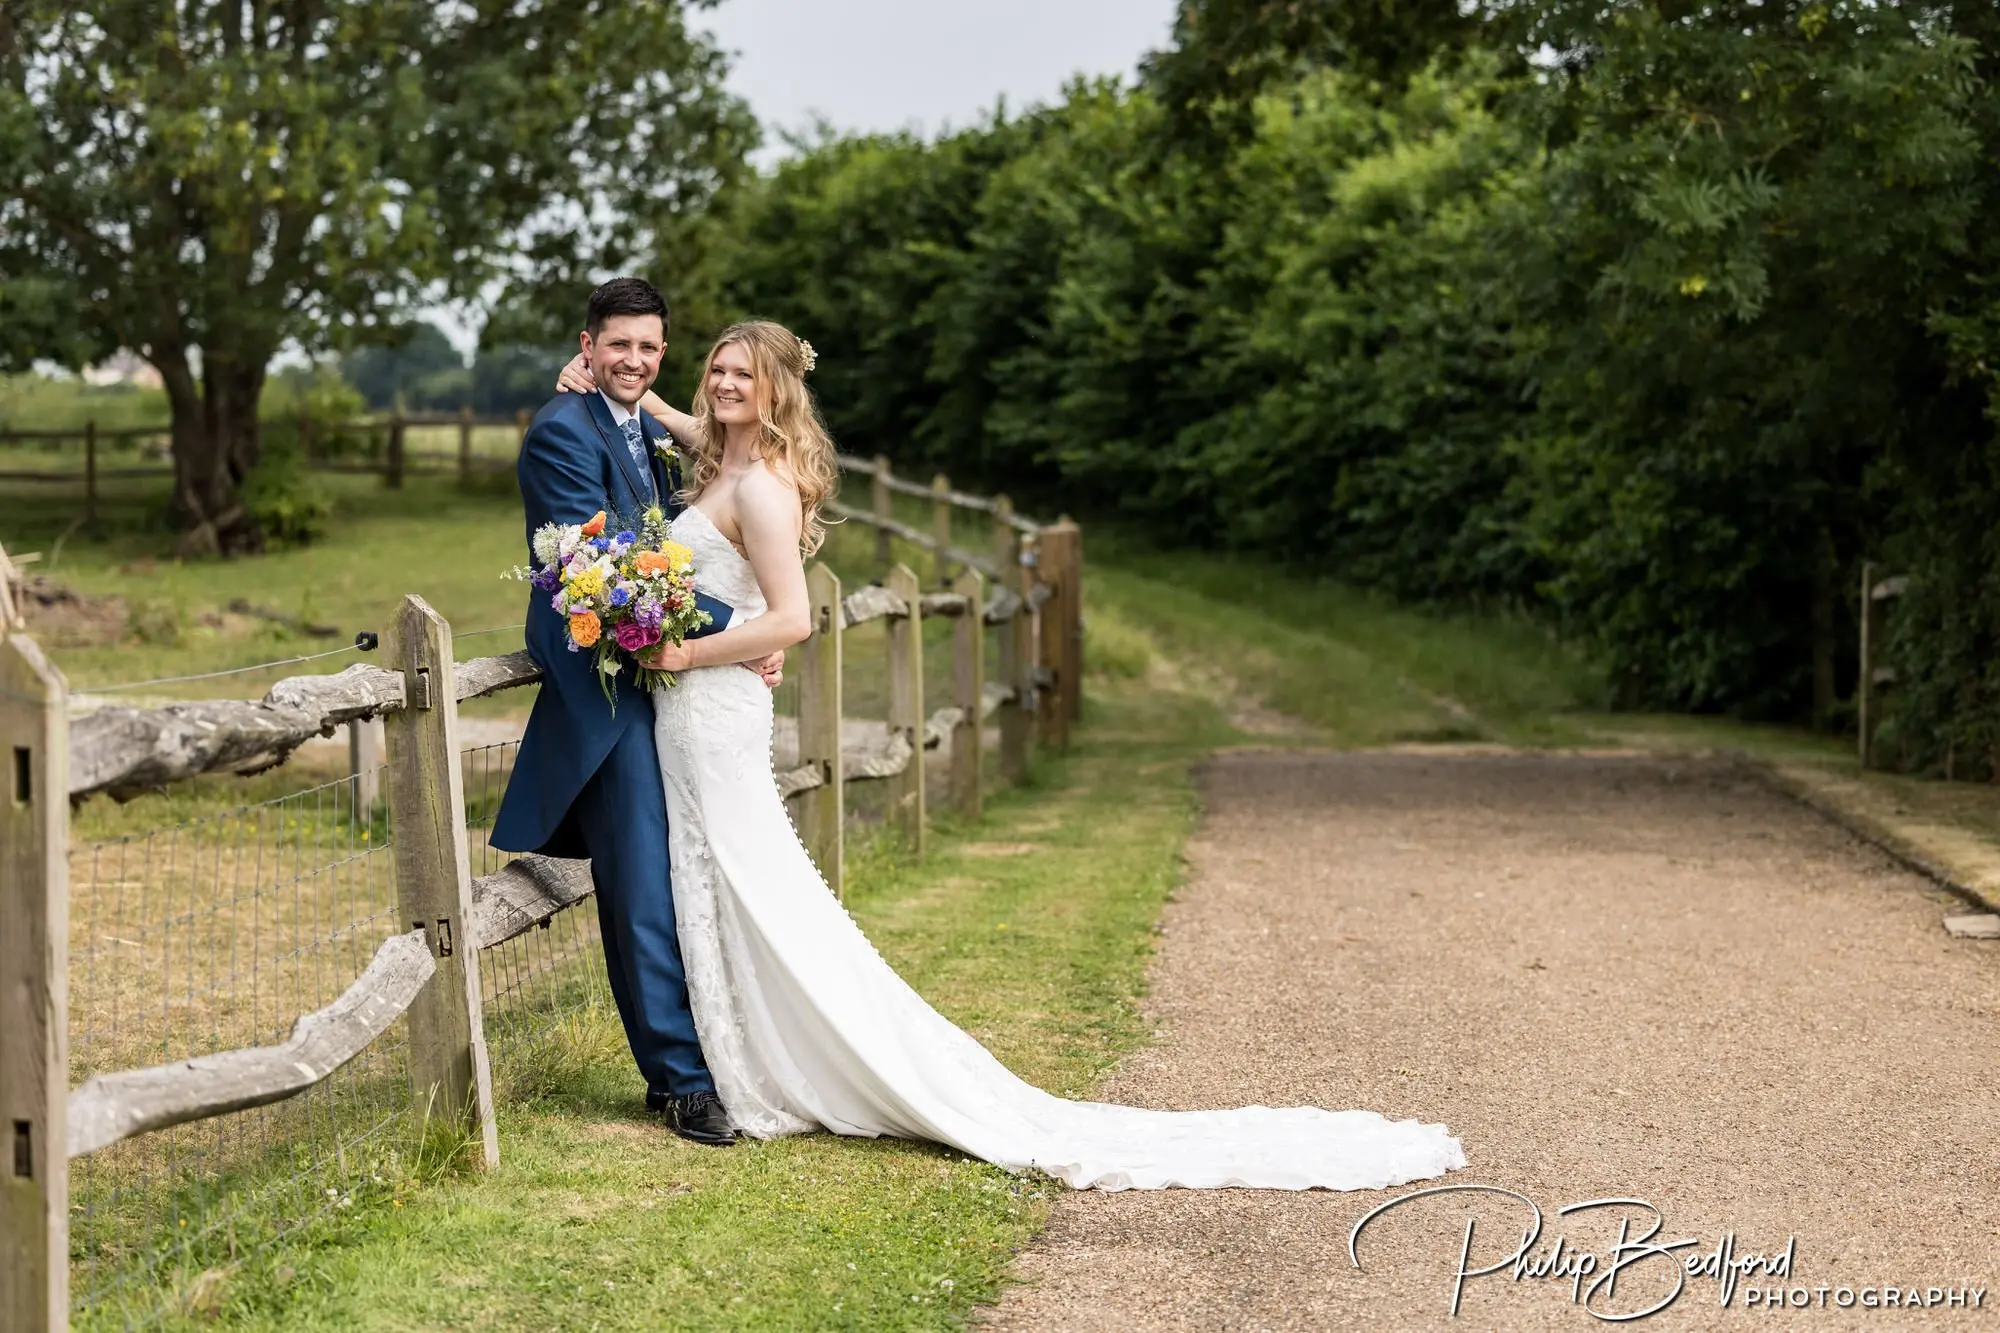 West Sussex Wedding Bride & Groom in a farmyard countryside setting